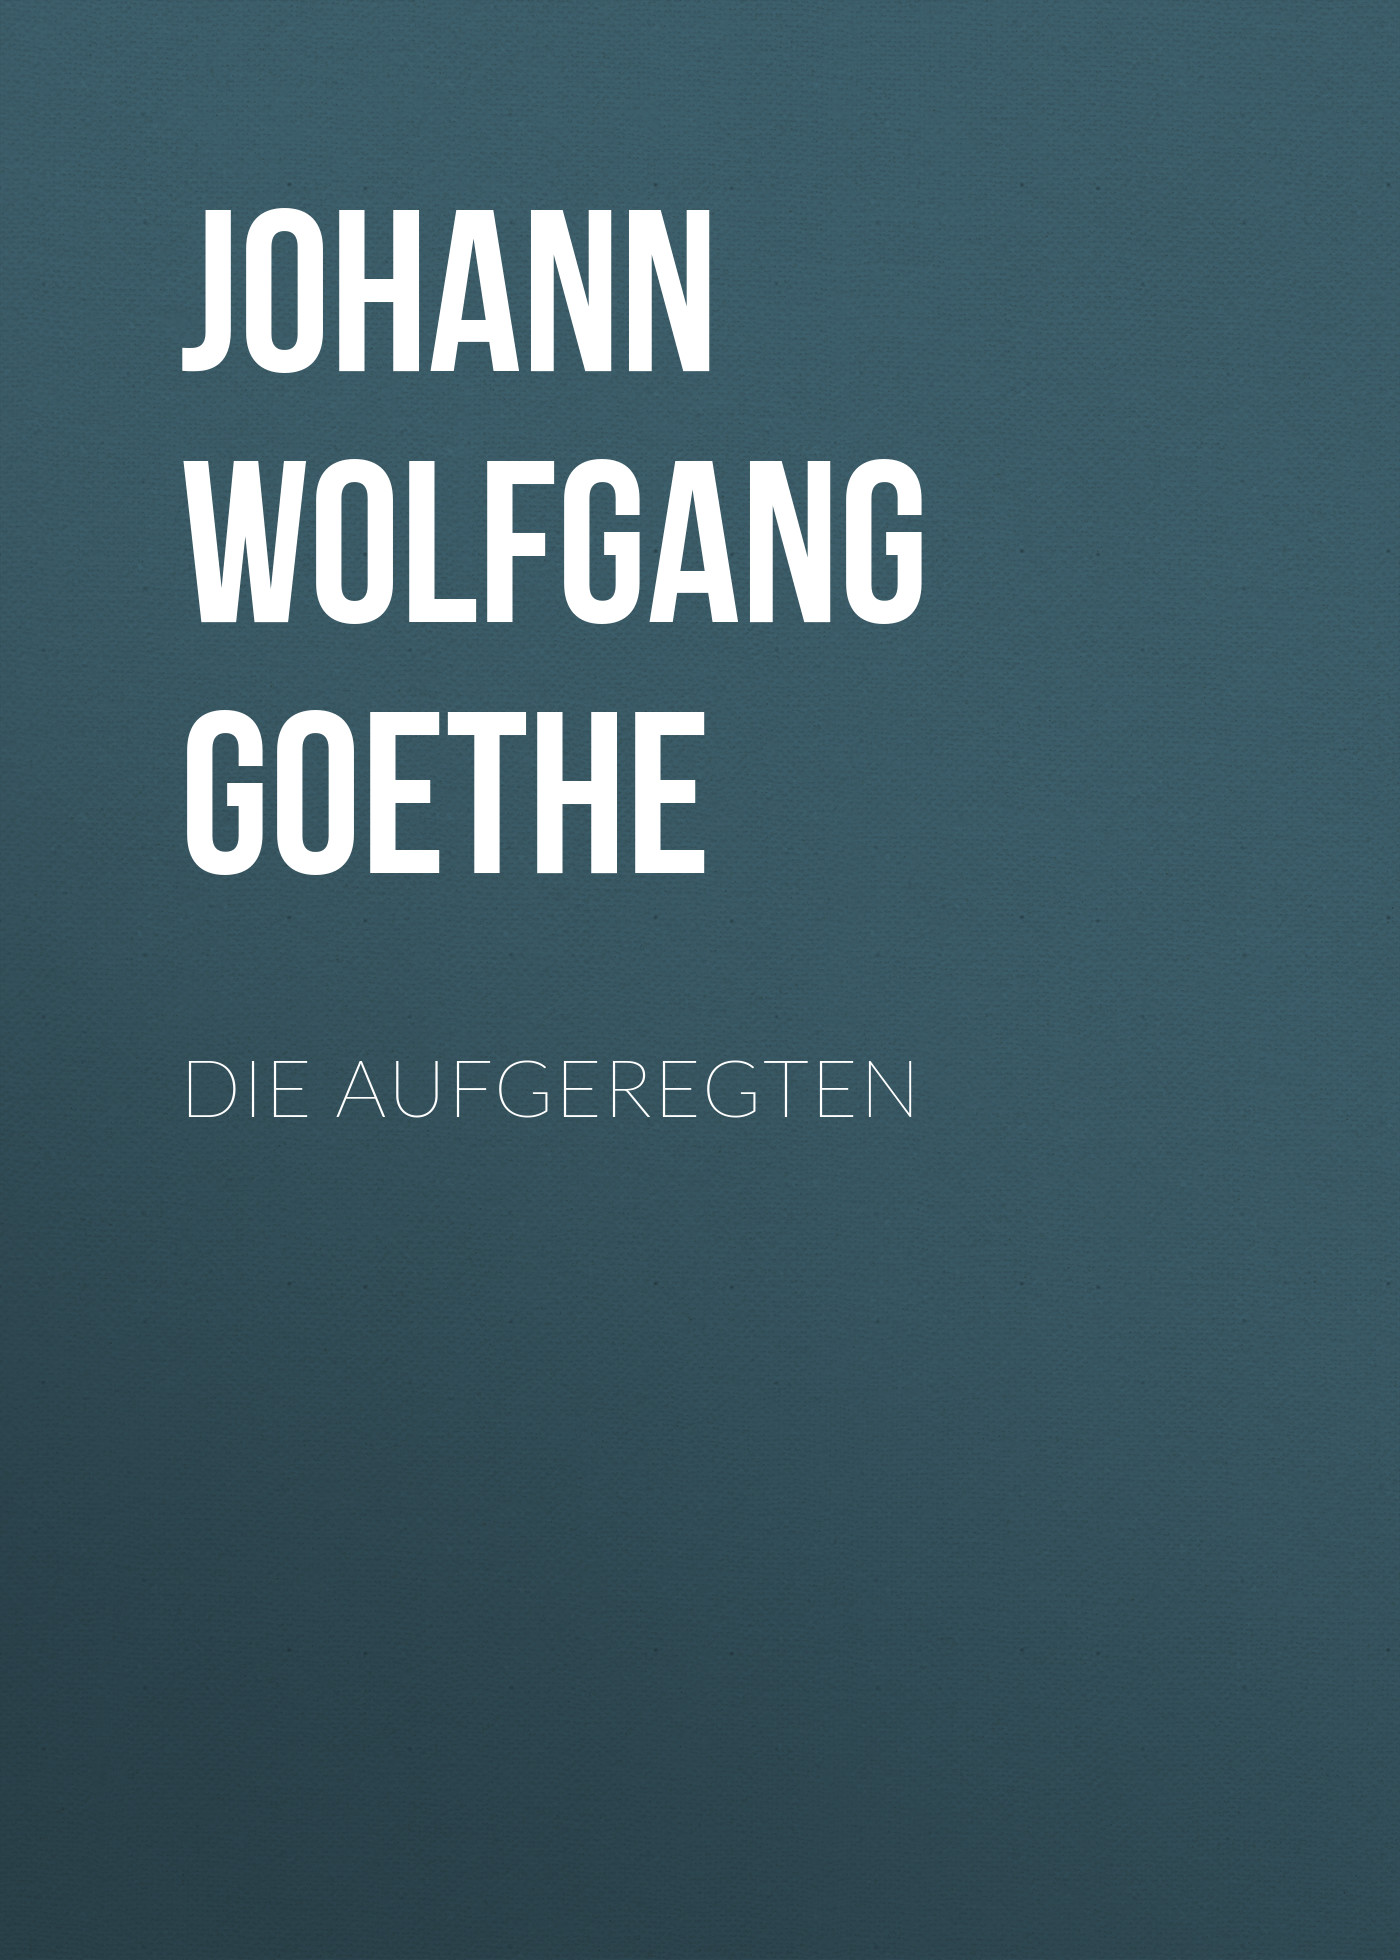 Книга Die Aufgeregten из серии , созданная Johann von Goethe, может относится к жанру Зарубежная старинная литература, Зарубежная классика. Стоимость электронной книги Die Aufgeregten с идентификатором 25203303 составляет 0 руб.